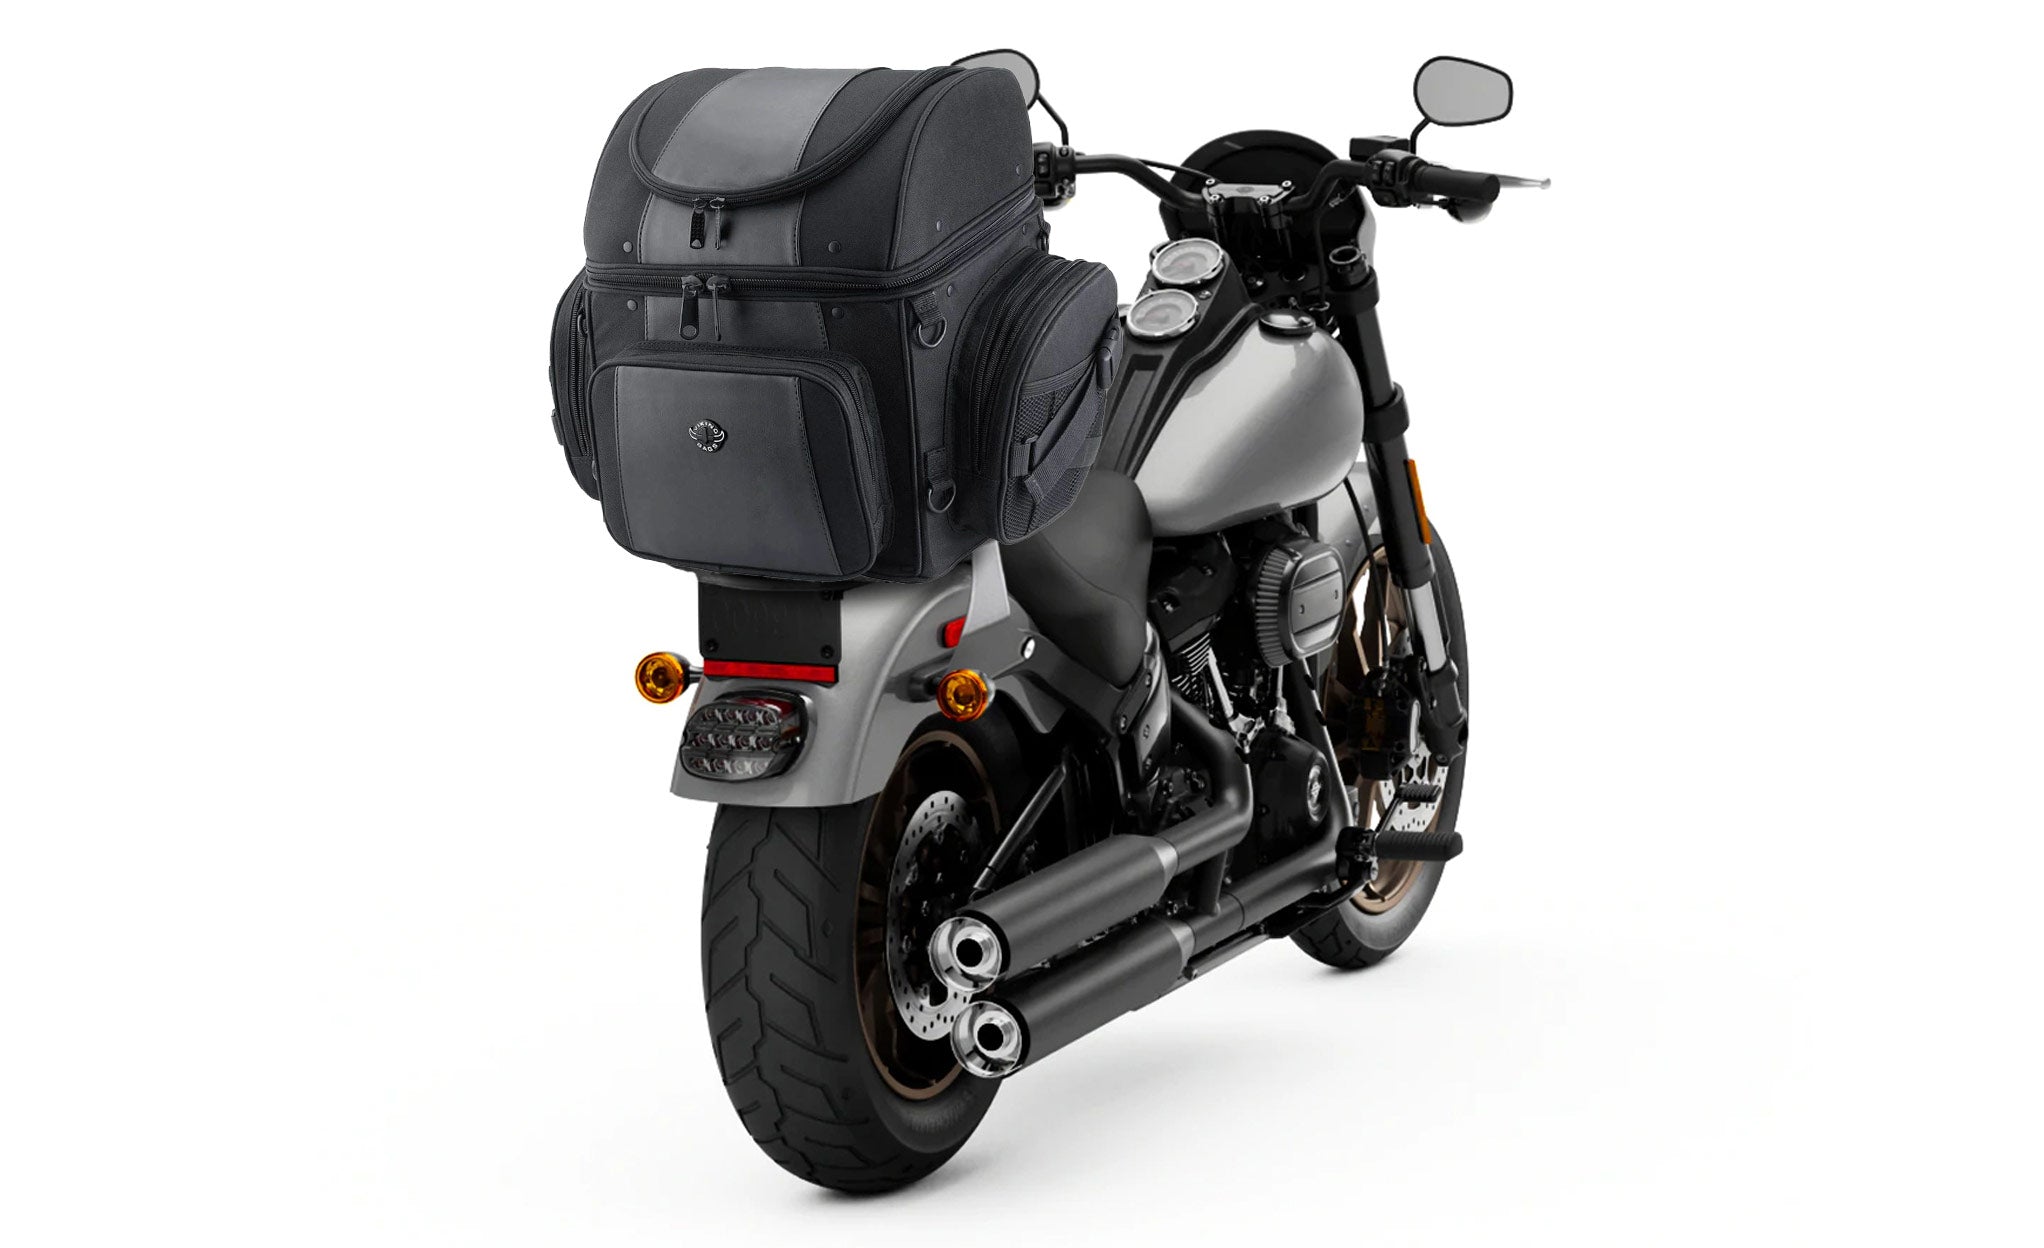 Viking Galleon Large Yamaha Motorcycle Sissy Bar Bag Bag on Bike View @expand